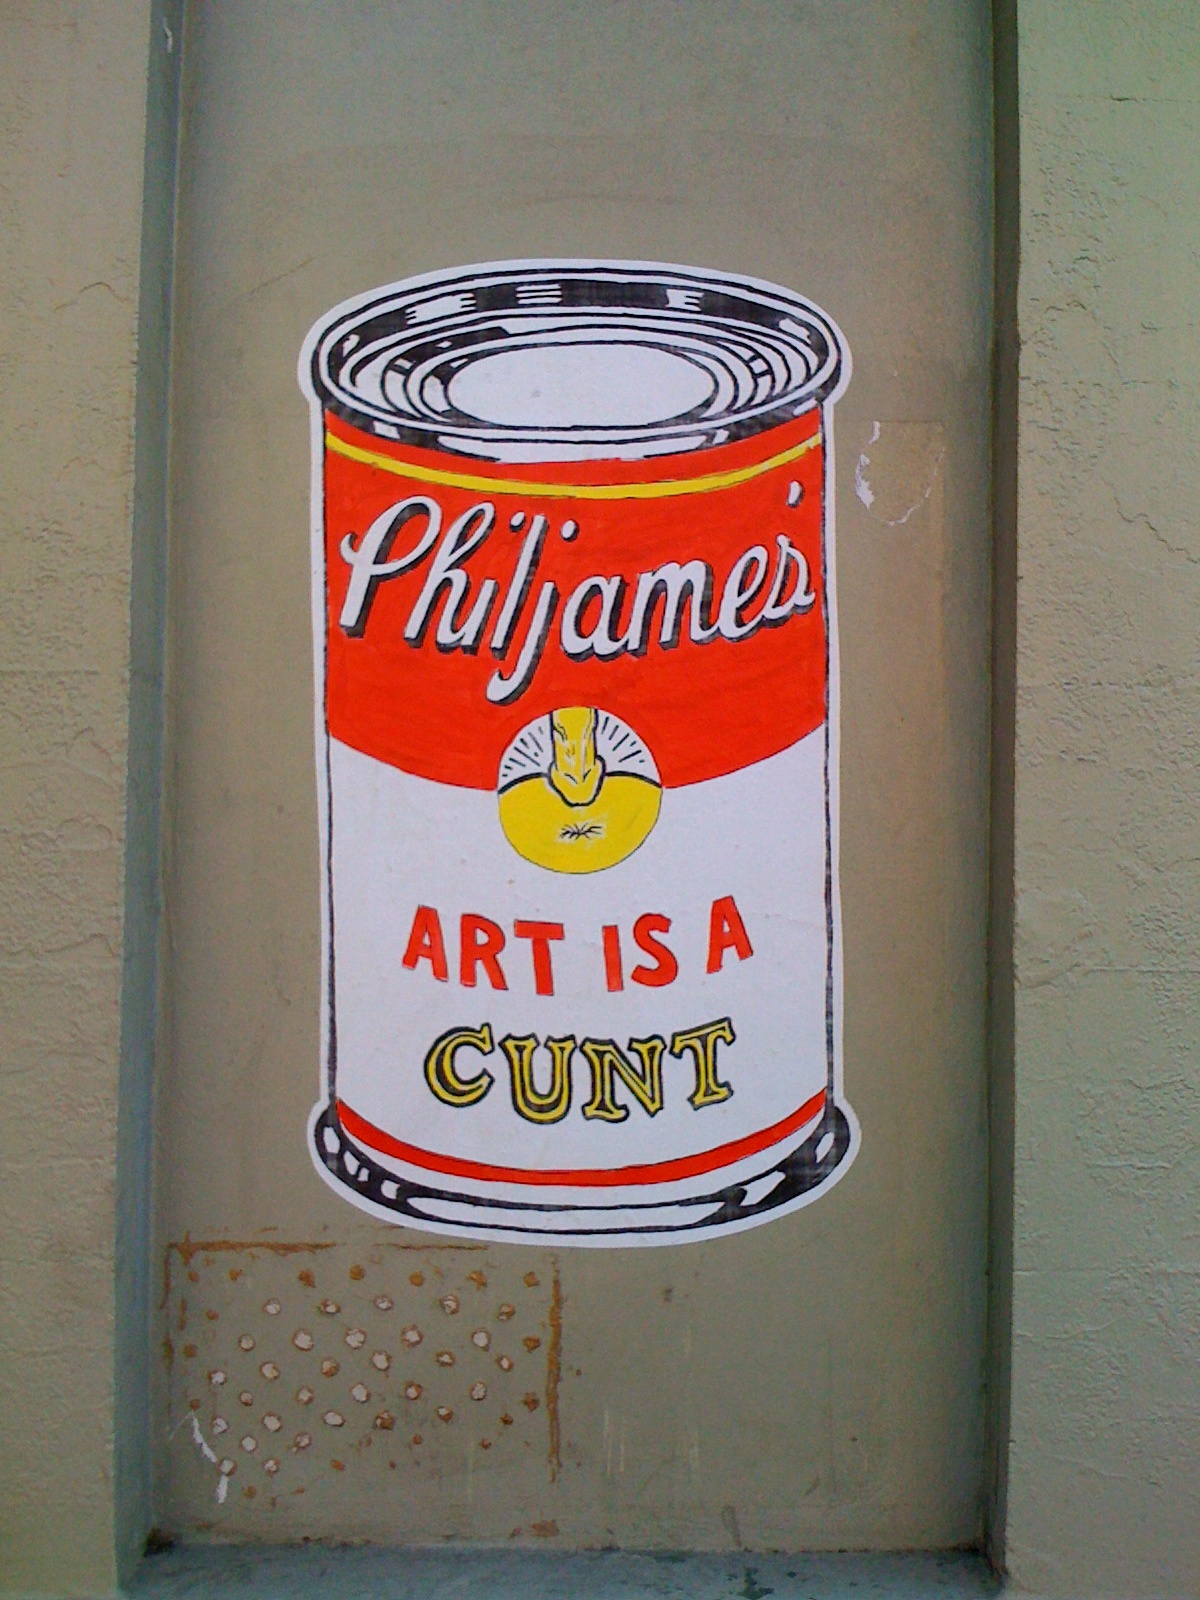 http://1.bp.blogspot.com/-CezO_epcr0A/TWc9sRHxLyI/AAAAAAAAA-A/3ArmSEmRIfk/s1600/phil-james-art-cunt-poster-1.jpg